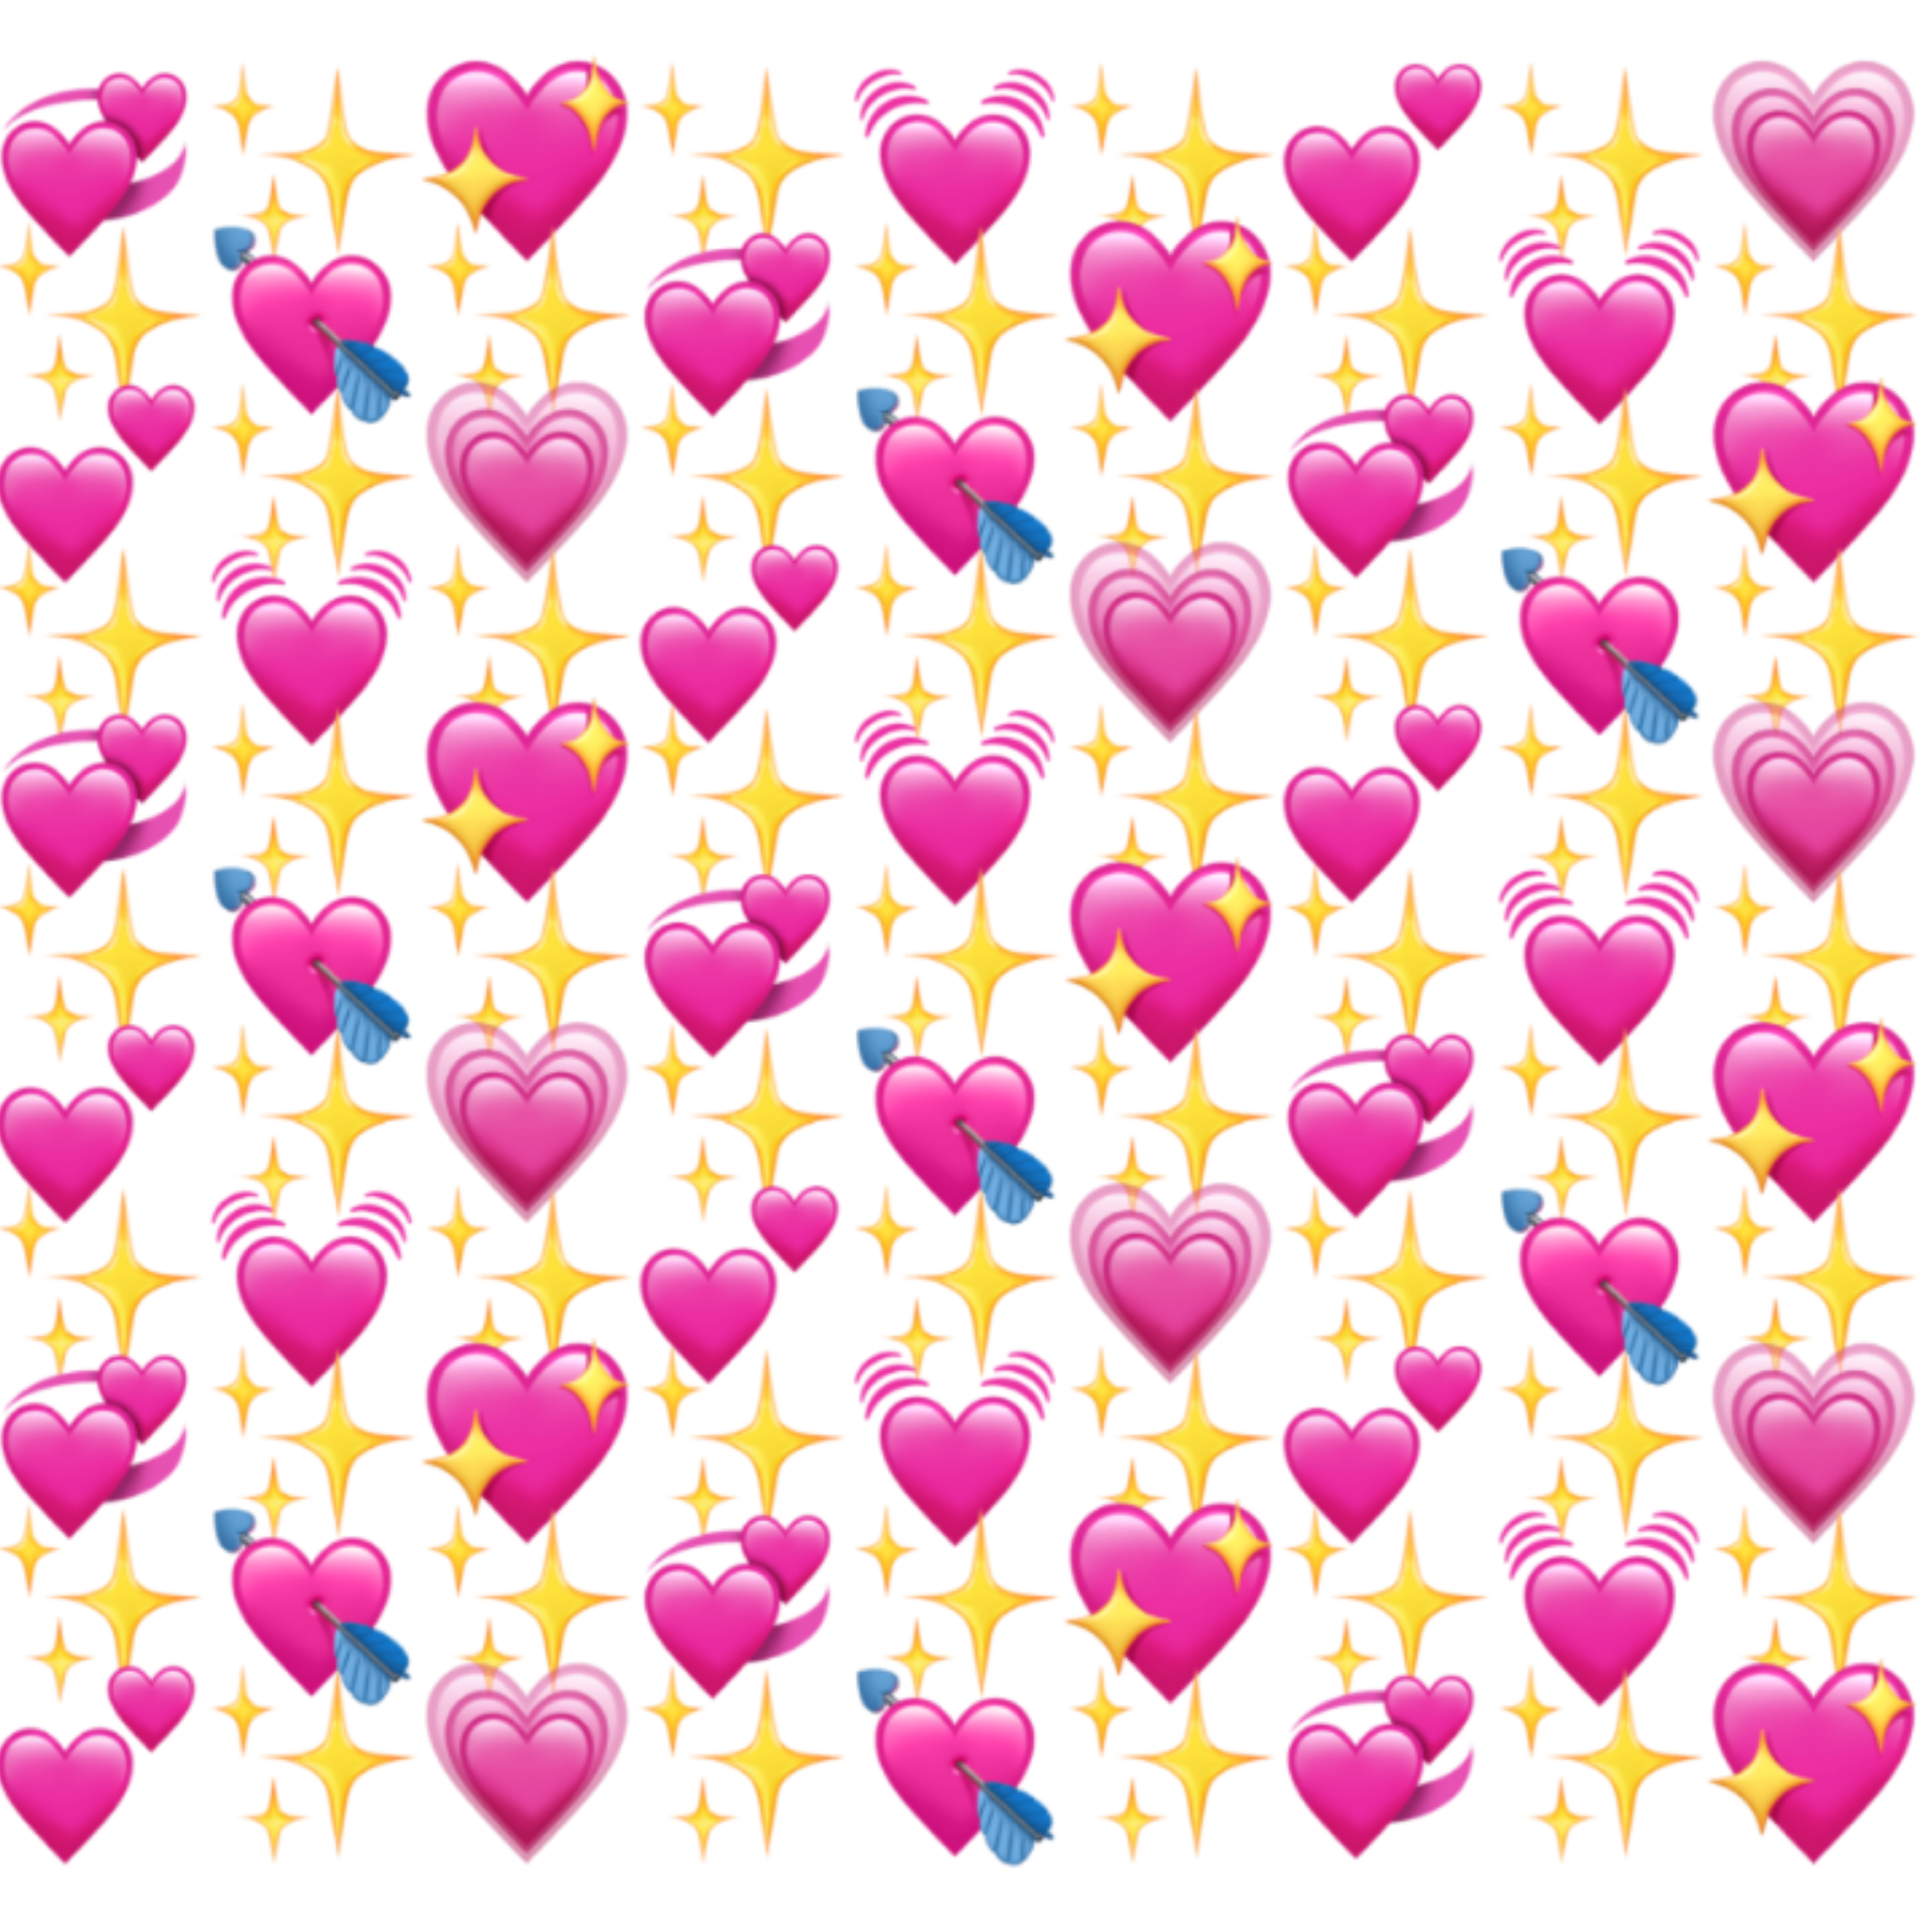 Biểu tượng trái tim đã trở thành một biểu tượng tình yêu và sự lãng mạn. Những hình nền với hình ảnh trái tim emoji đầy màu sắc sẽ càng làm cho tình yêu của bạn trở nên đặc biệt hơn.